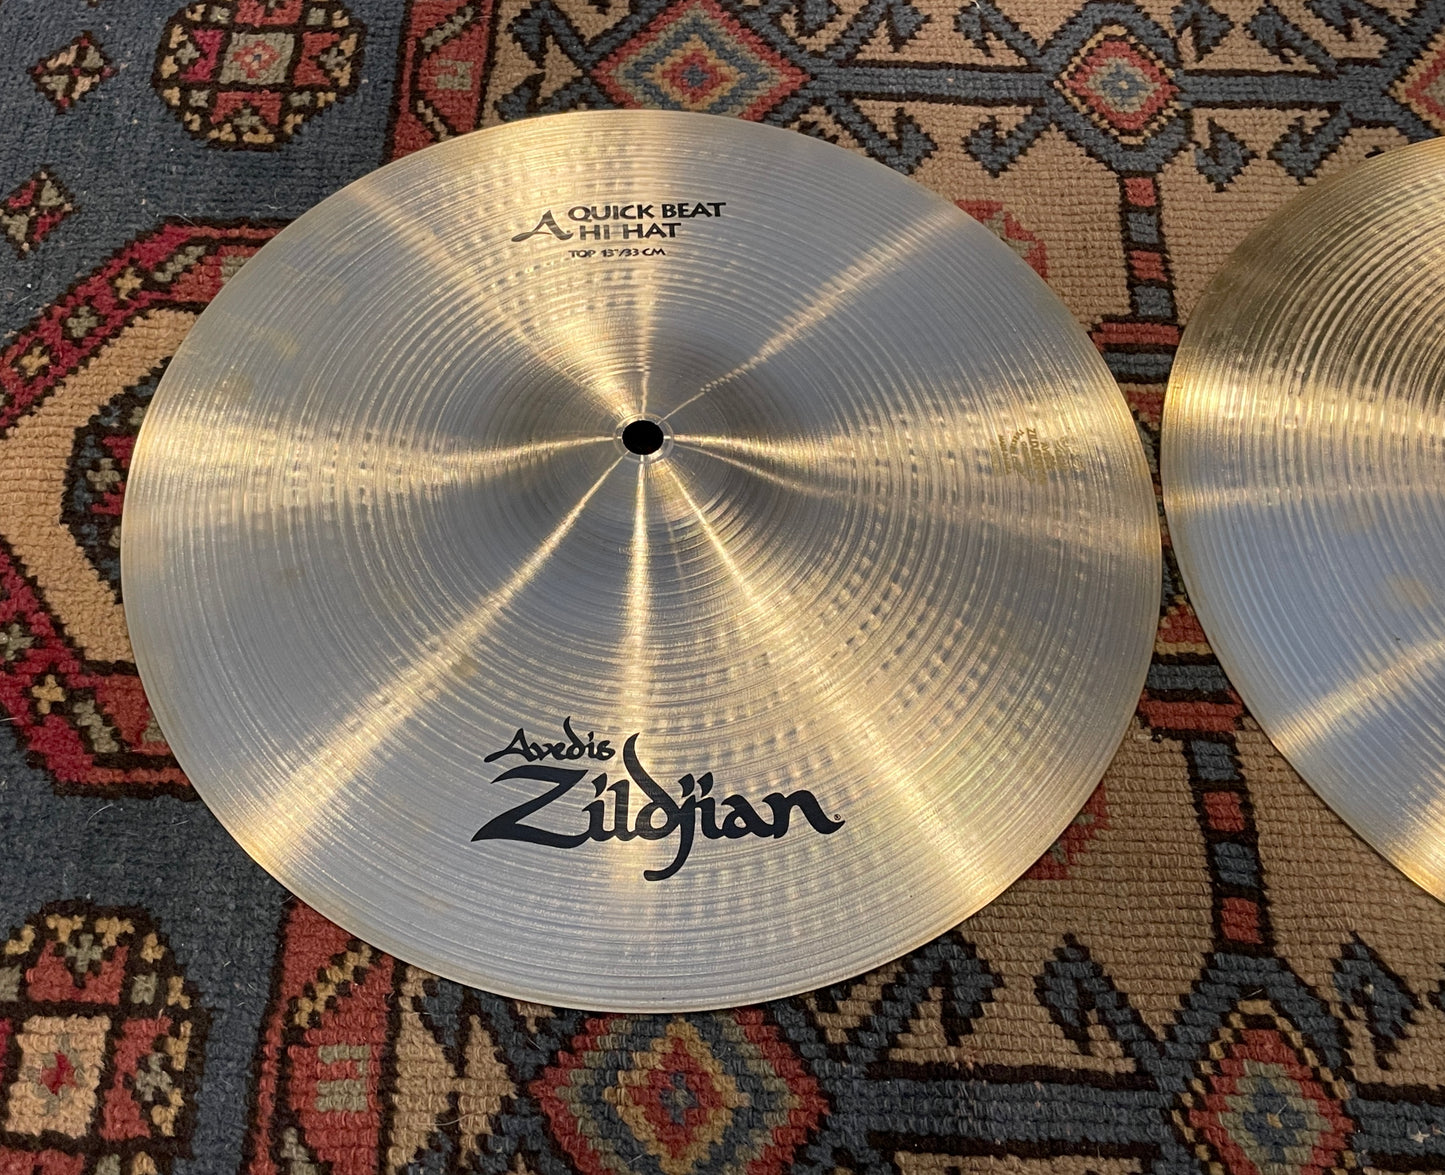 13" Zildjian A Quick Beat Hi-Hat Cymbal Pair A0147 810g/1028g